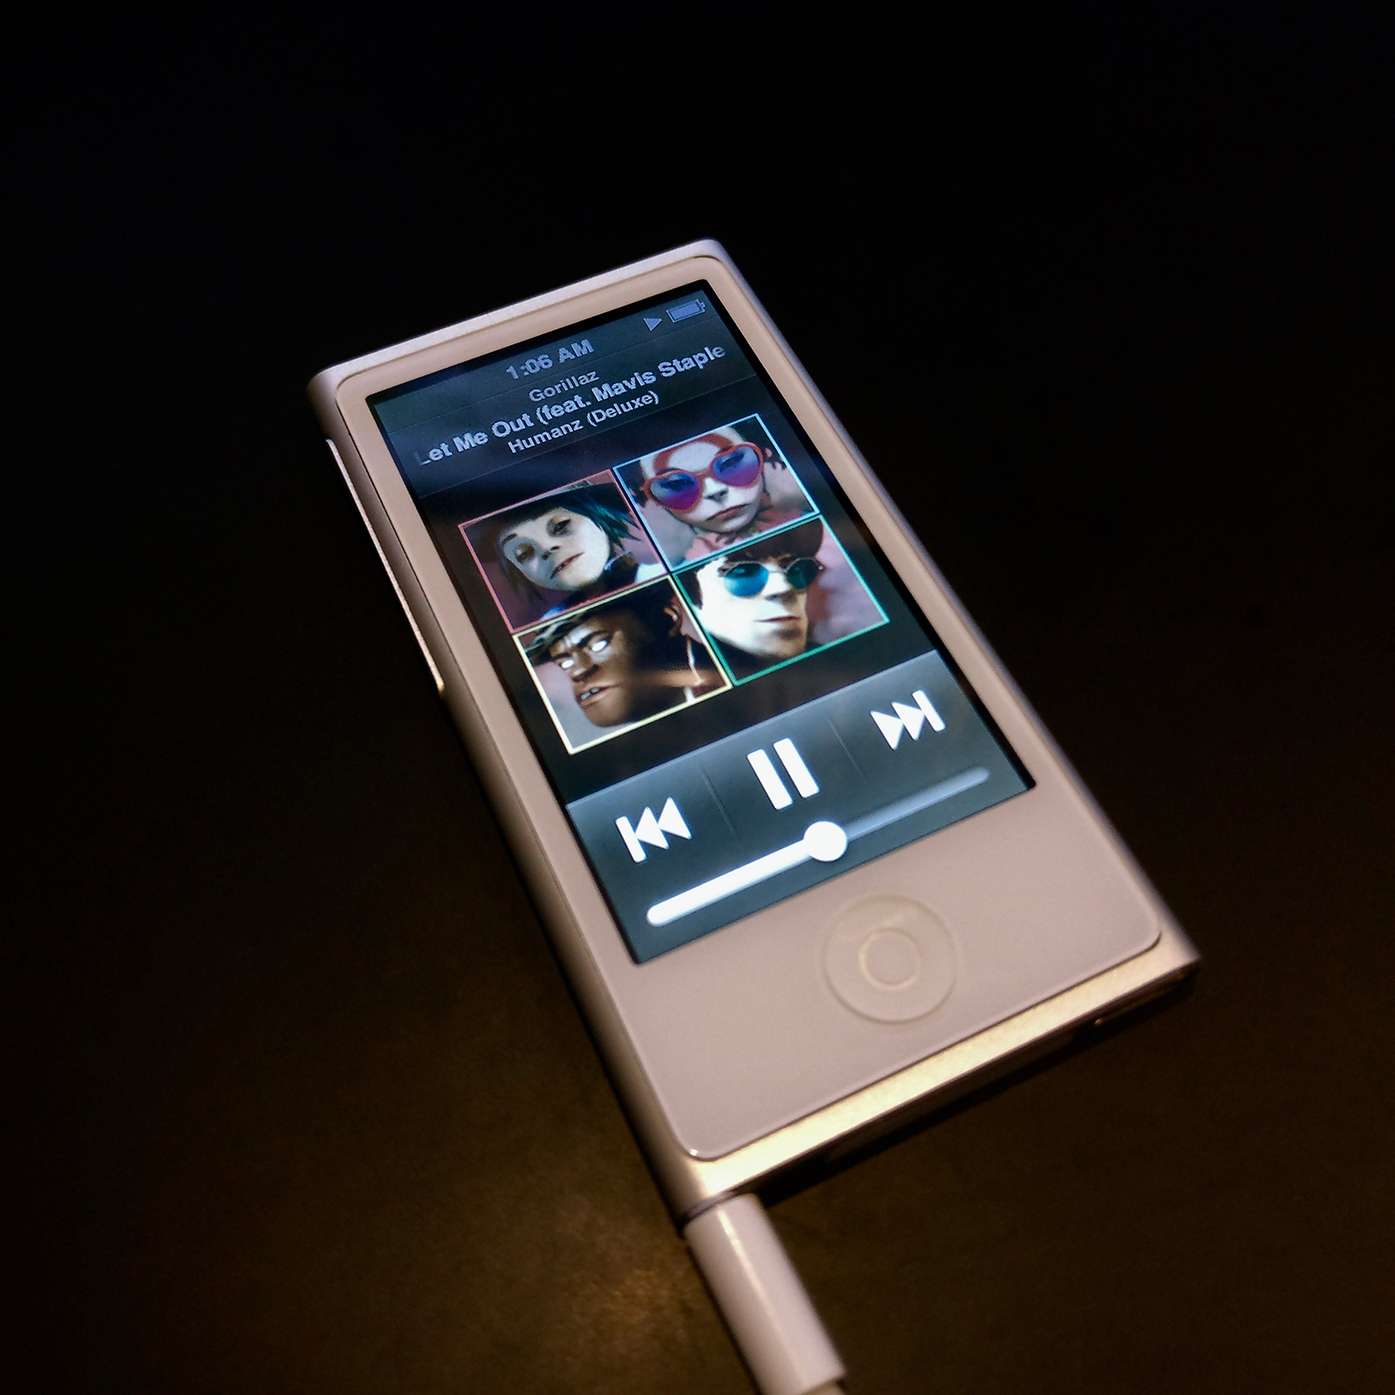 串流音乐时代 我为什么还在坚持使用ipod Nano 听歌 知乎